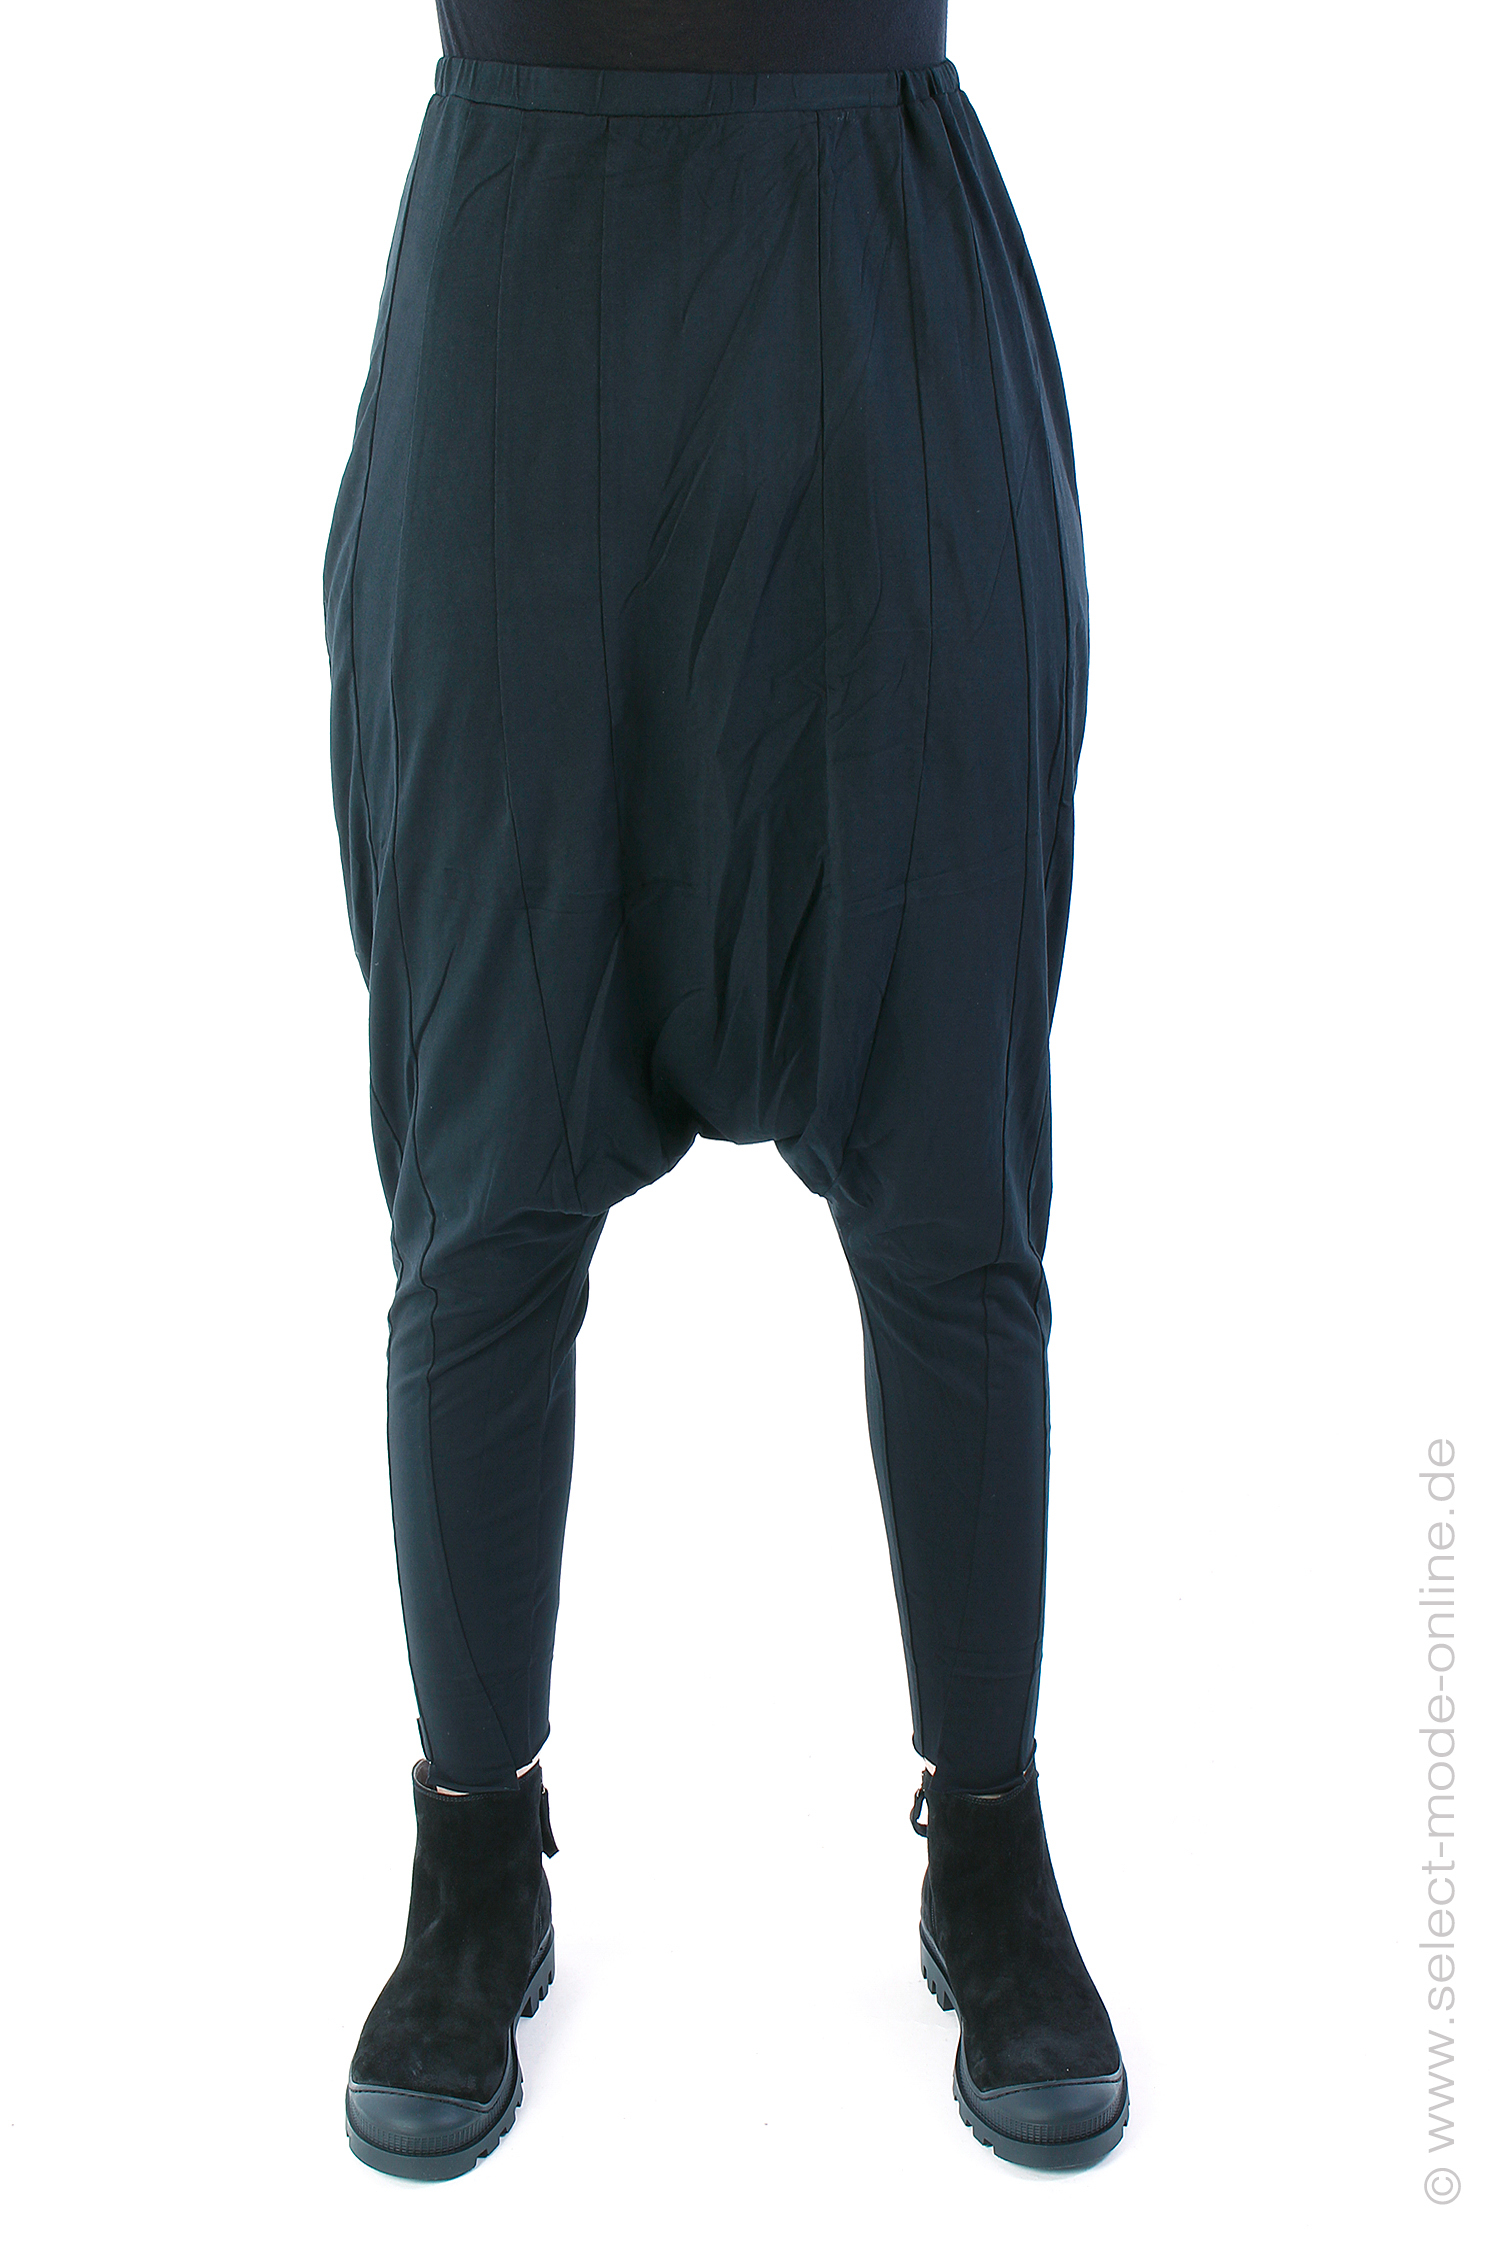 Low crotch jersey pants - Black - 2243470110